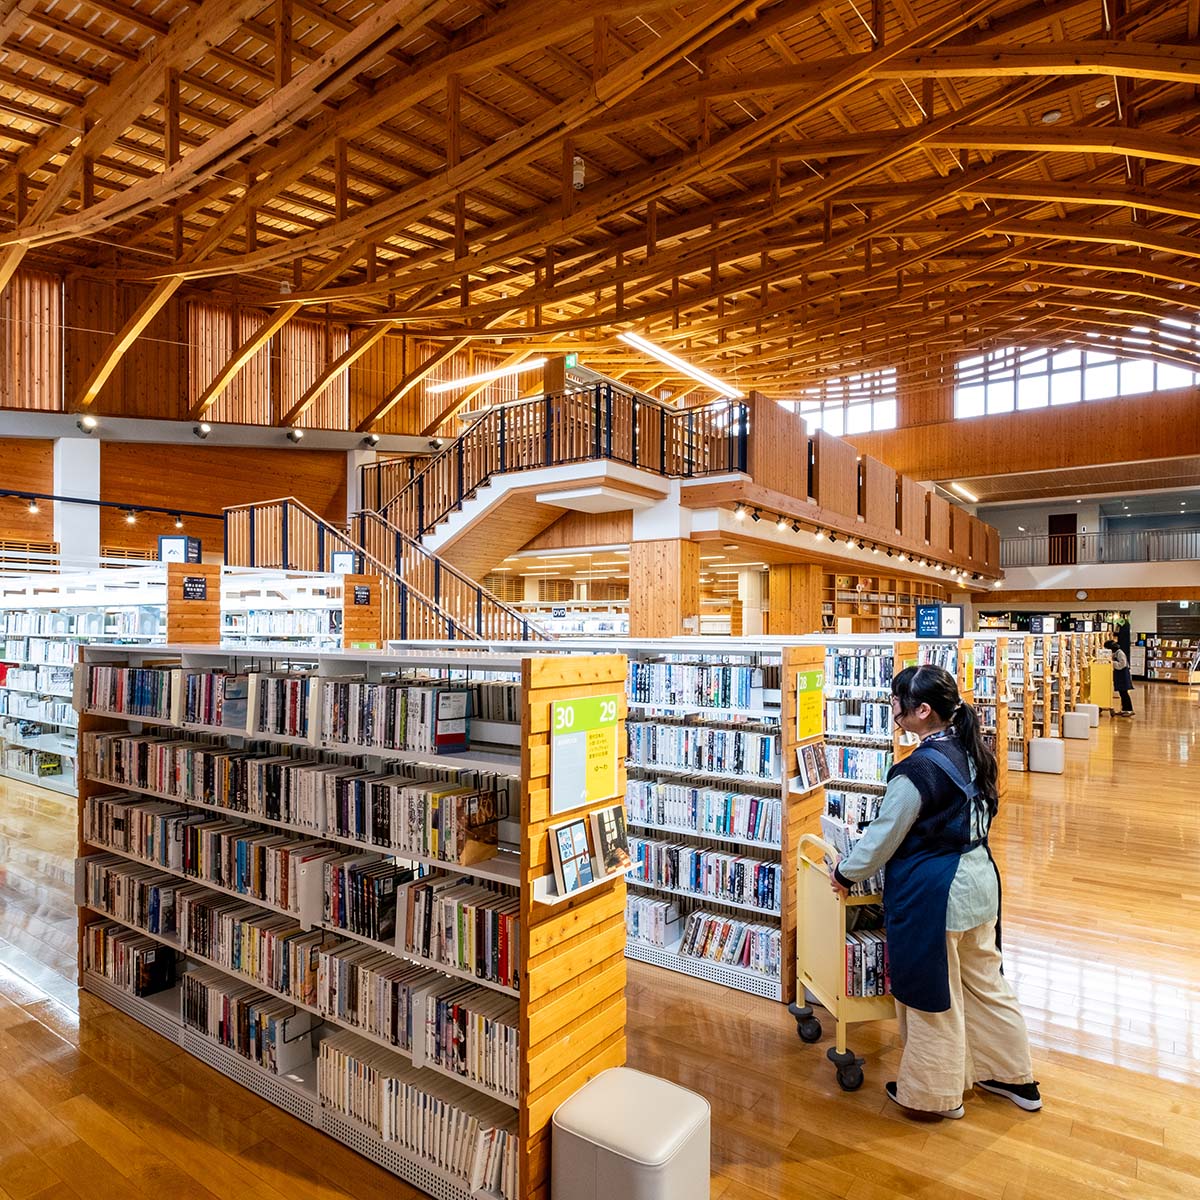 連接サスペンアーチ構造の天井が目を引く図書館。テーマごとに分類され、目的の本を探しやすい。